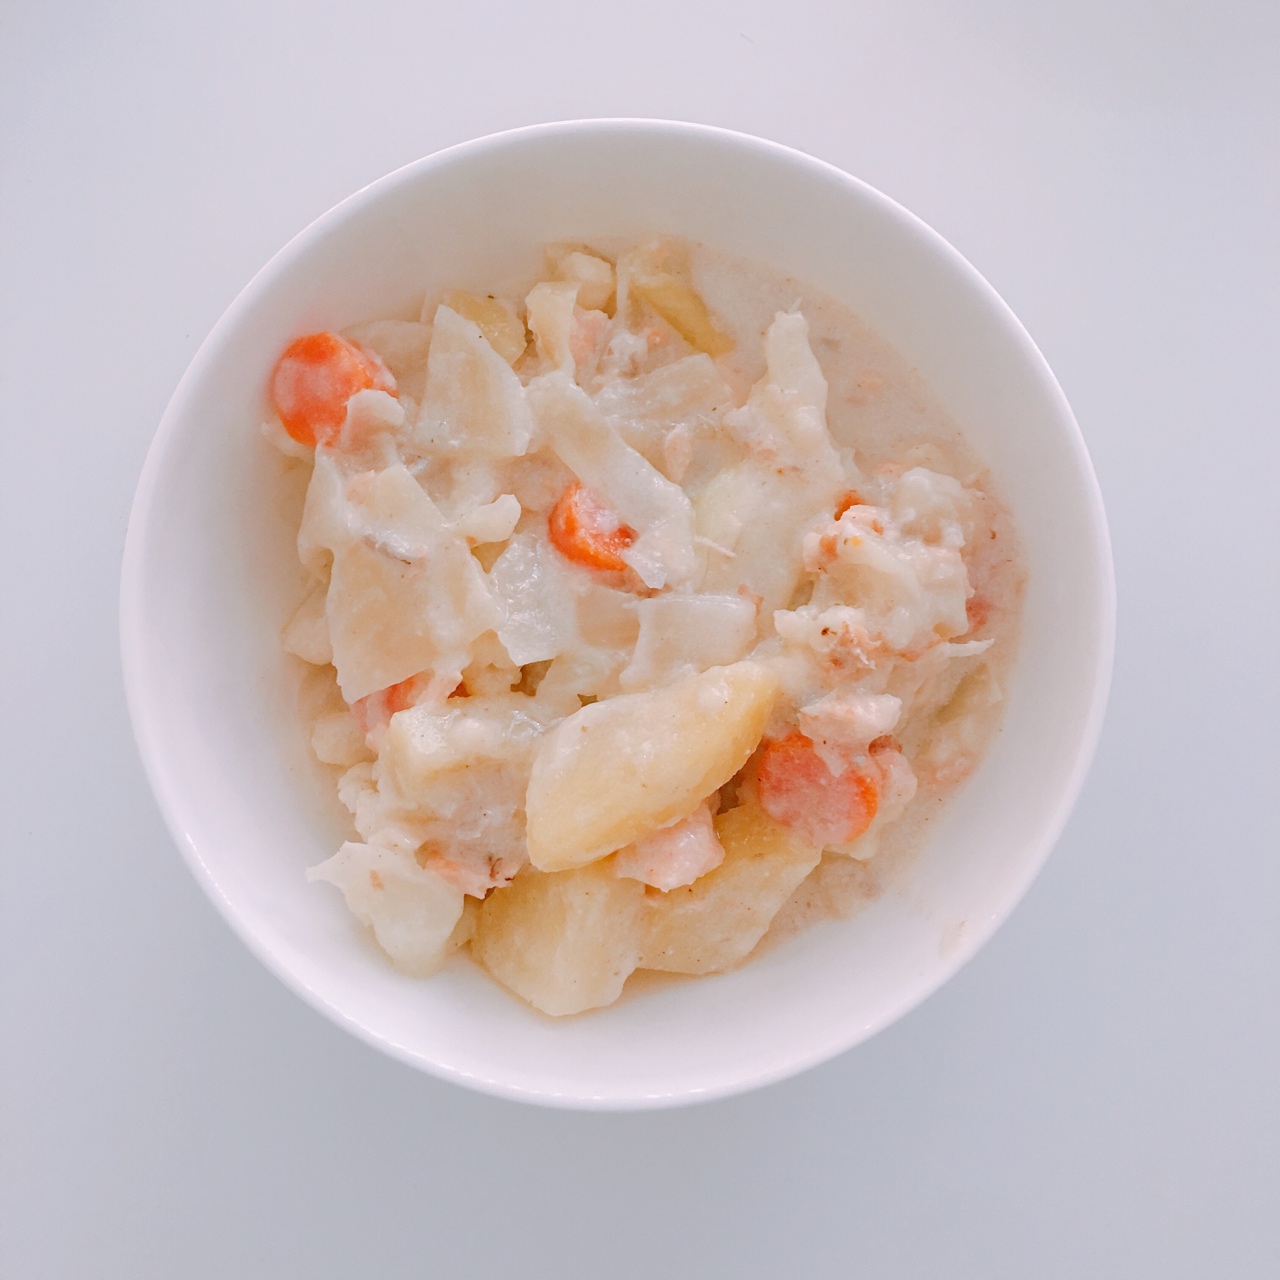 三文鱼奶油炖菜+芝士焗饭【曼食慢语】